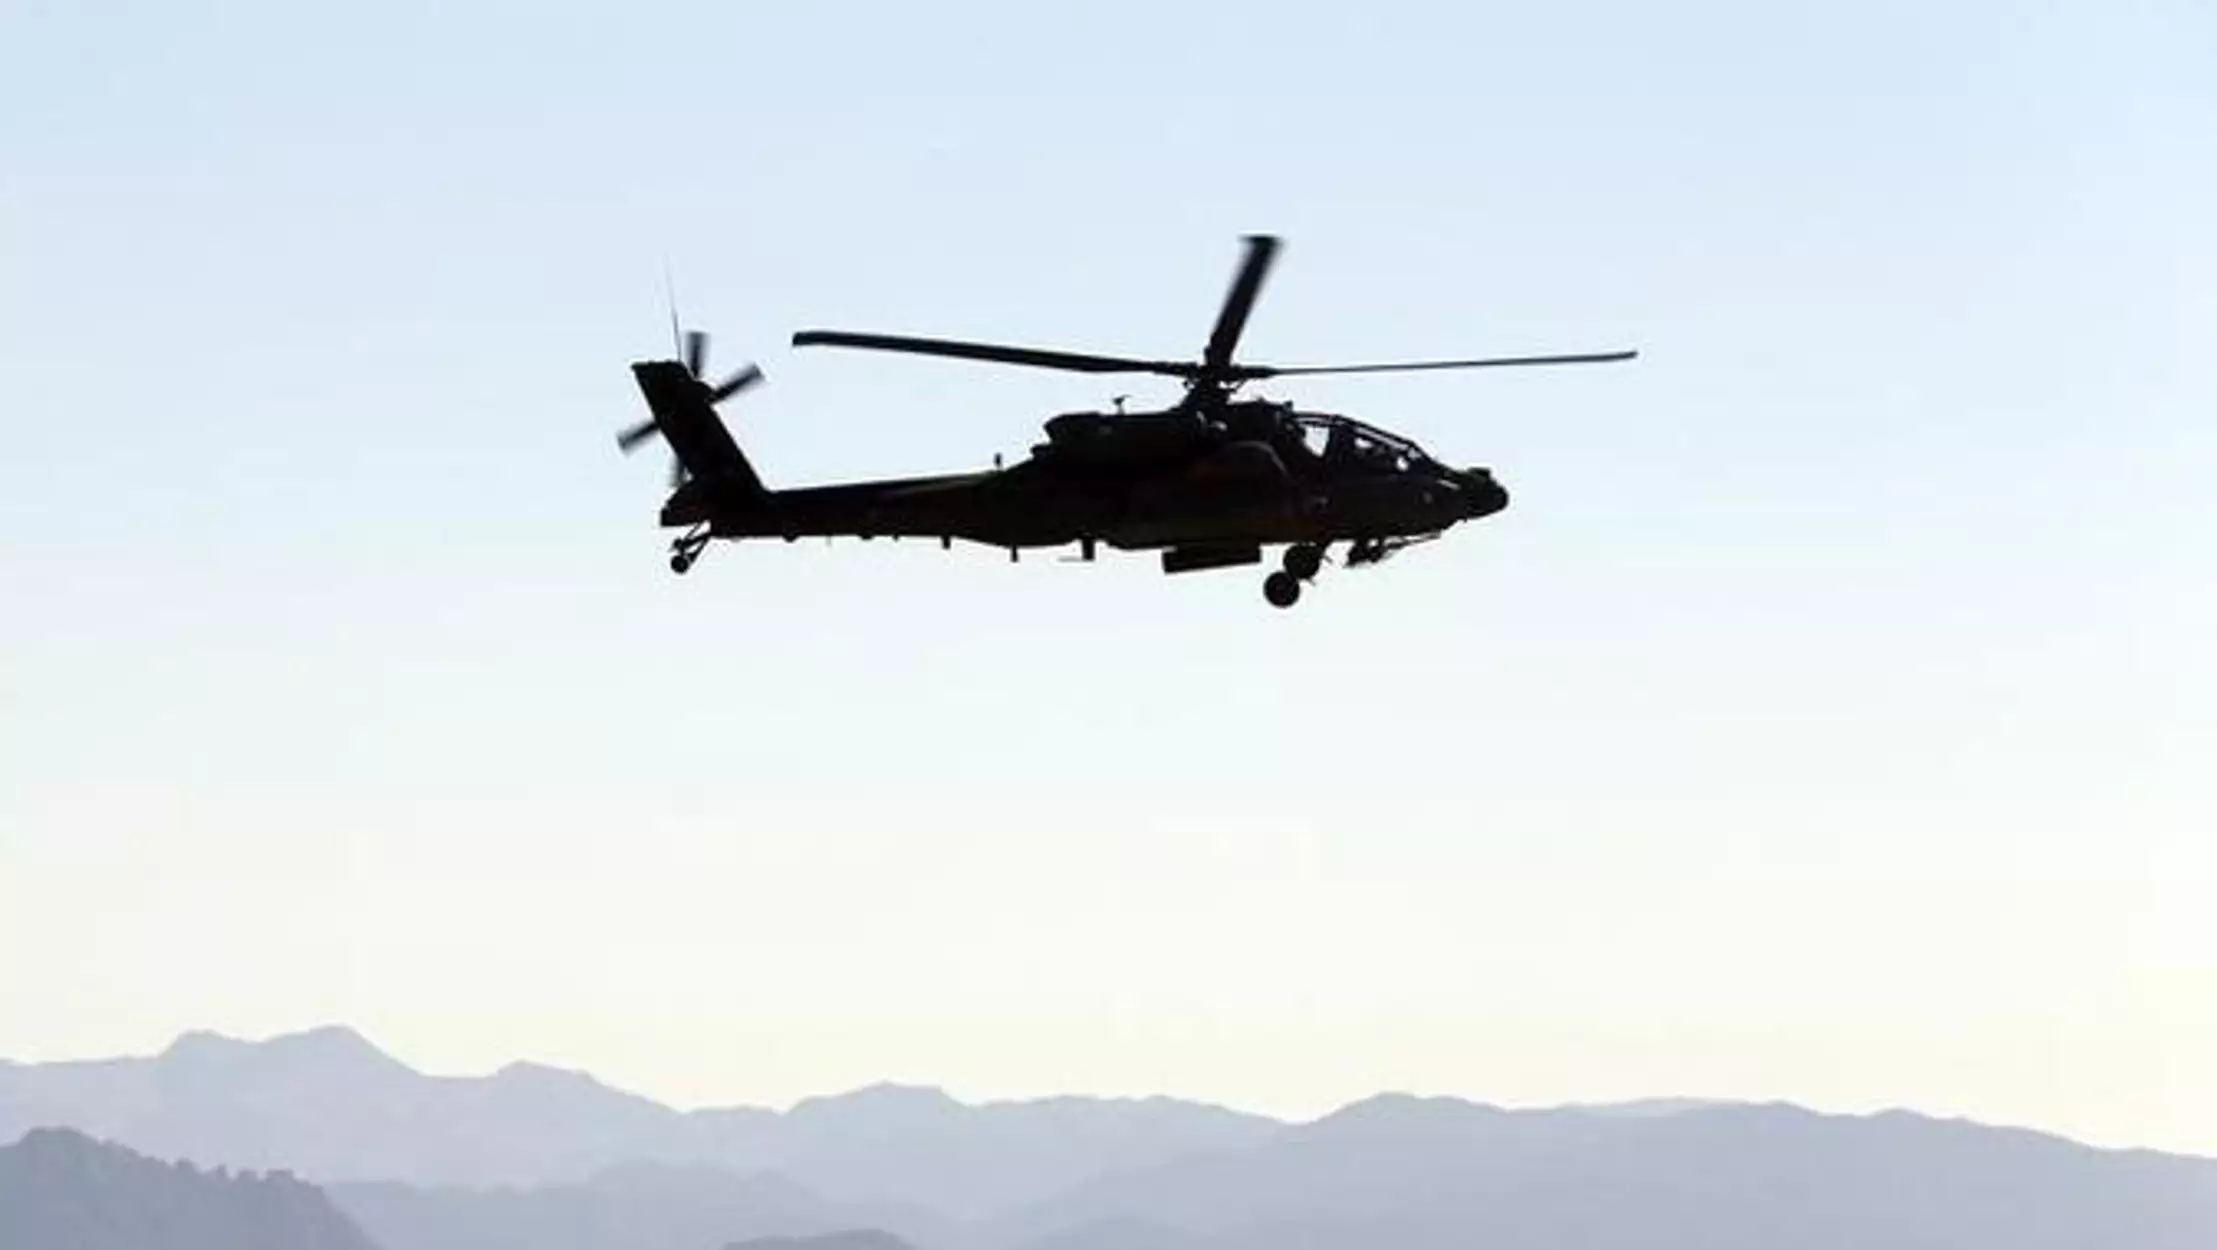 Νότια Κορέα: Συνετρίβη ελικόπτερο τύπου S-58T κοντά στην πόλη Γιανγκγιάνγκ – Πέντε νεκροί (upd)